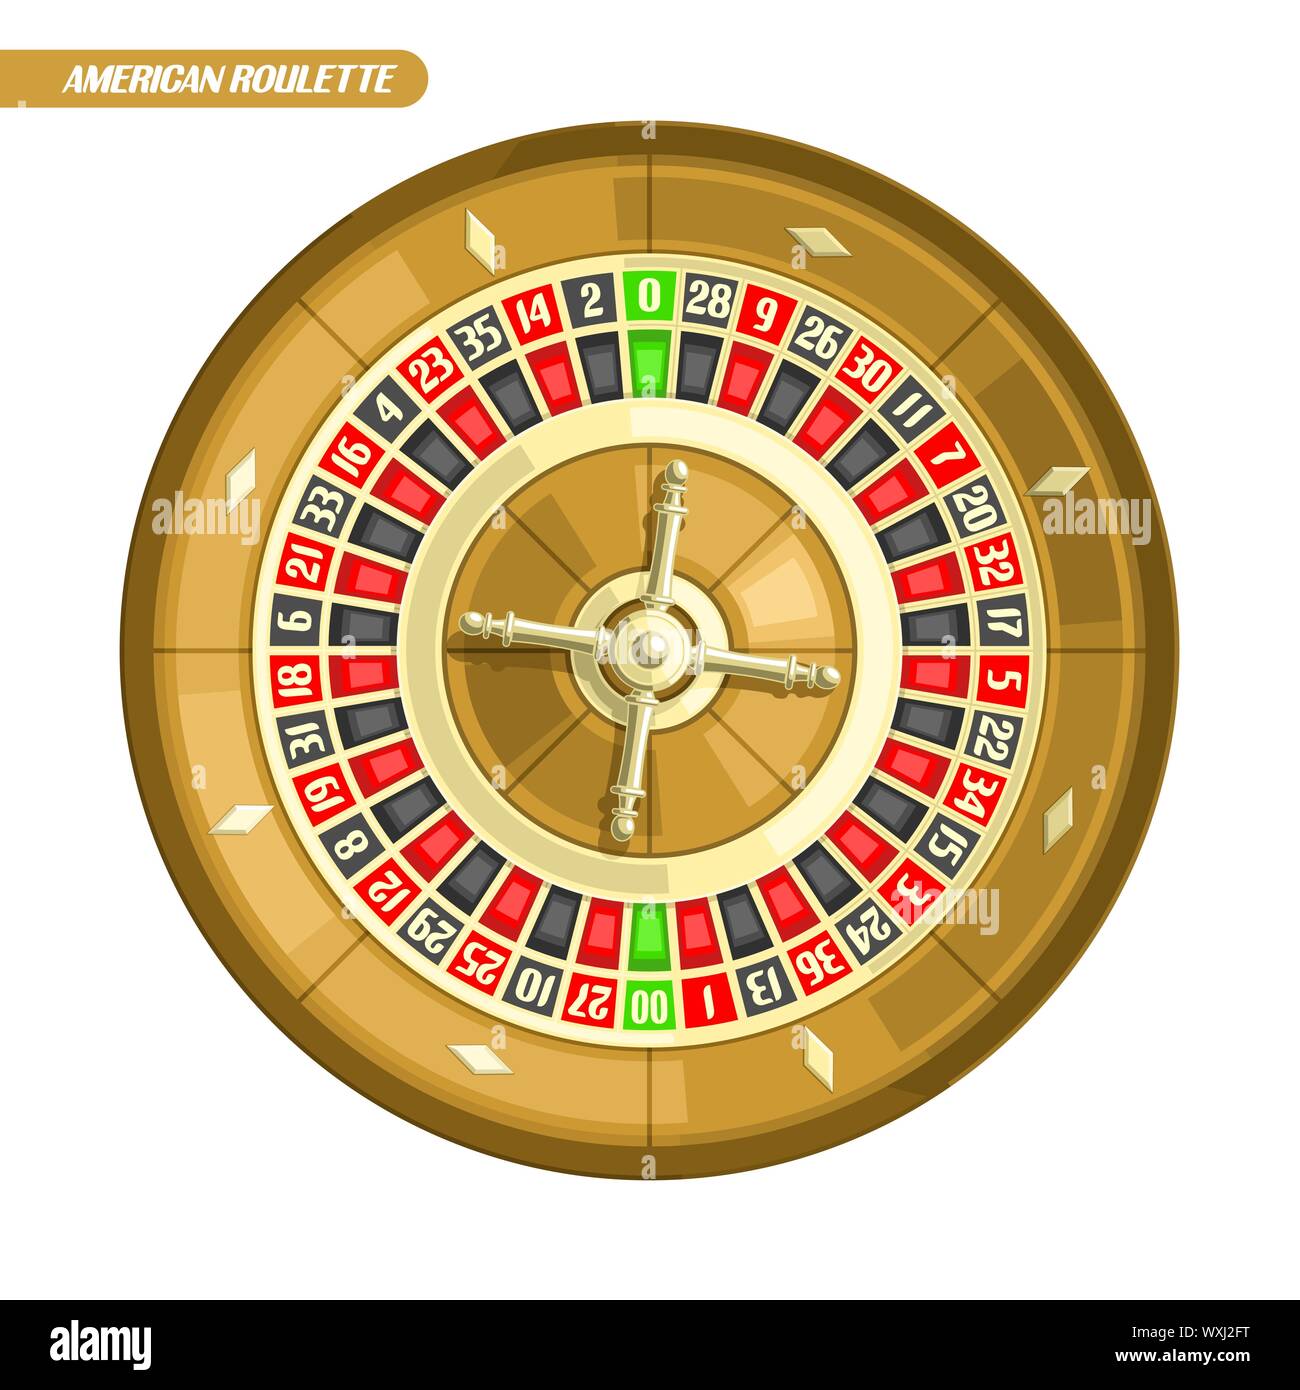 Illustrazione Vettoriale di ruota della Roulette: American Roulette con doppio zero e golden wheel per online casino, vista dall'alto, isolato su sfondo bianco. Illustrazione Vettoriale